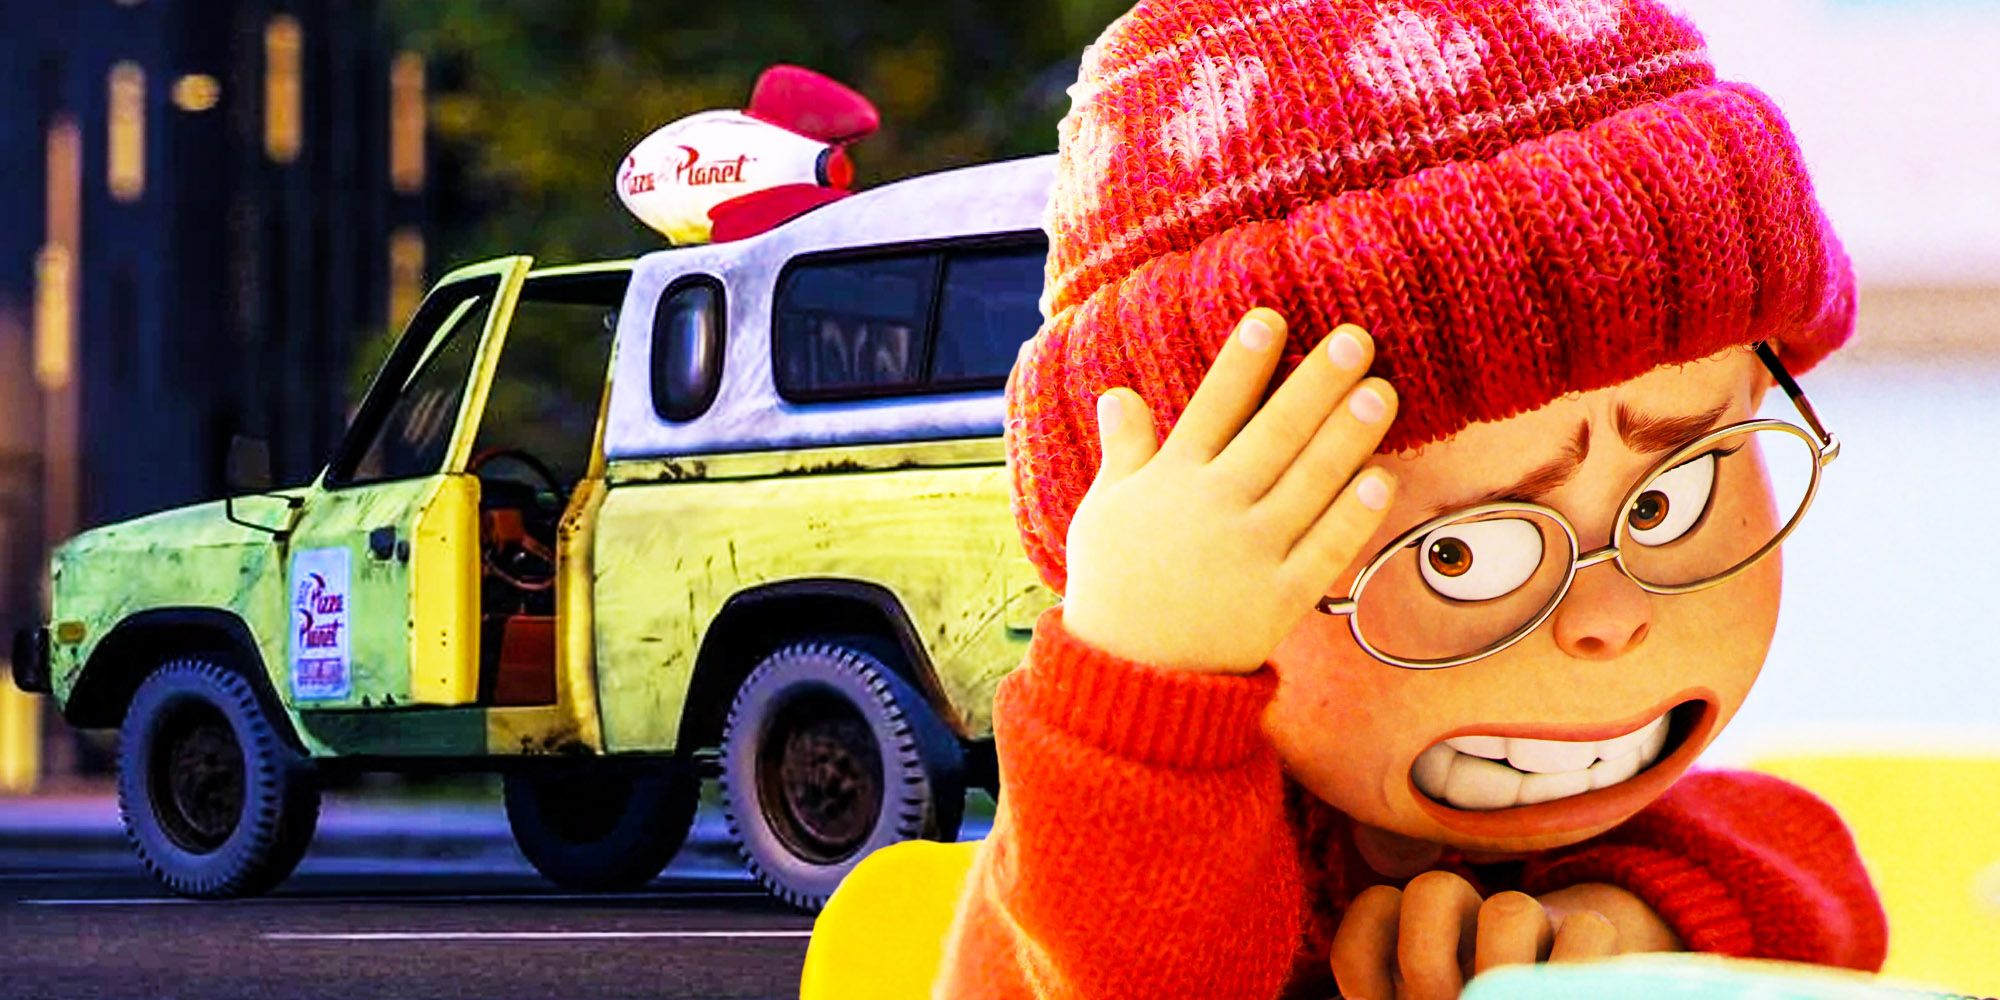 Dónde ver el camión Pizza Planet de Pixar en Turning Red